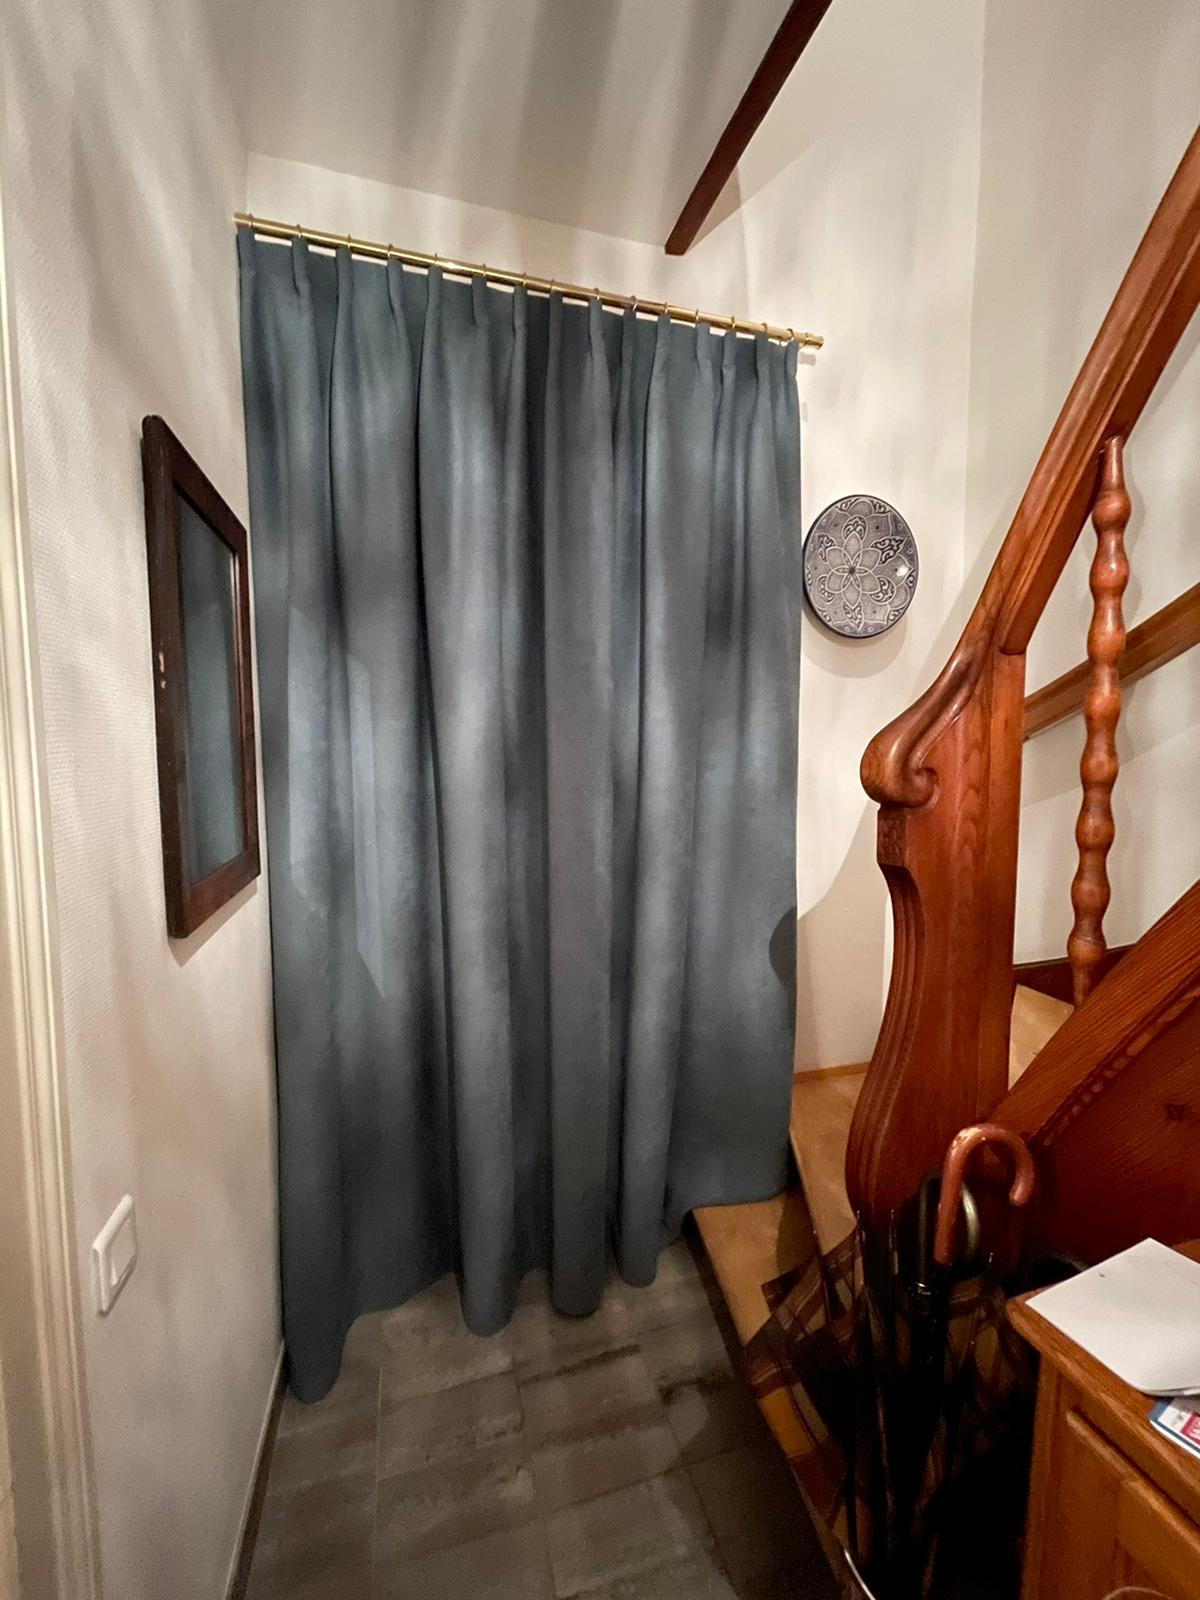 Rideau de porte rideau thermique isolé rideau de coulé de rideau de coulé